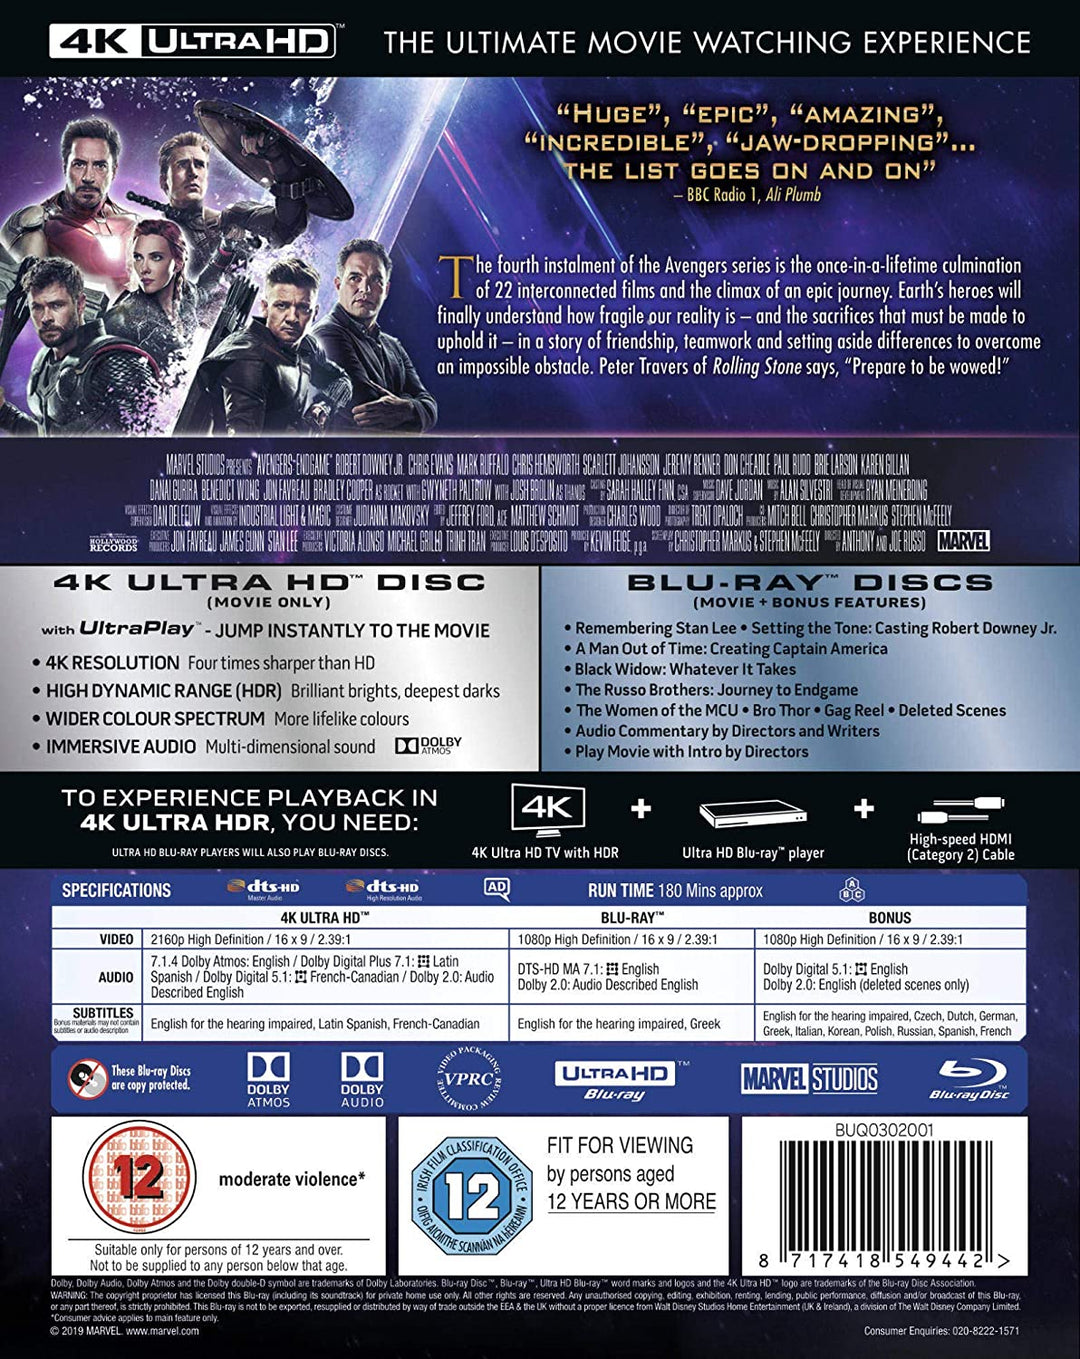 Marvel Studios Avengers: Endgame [Blu-ray]